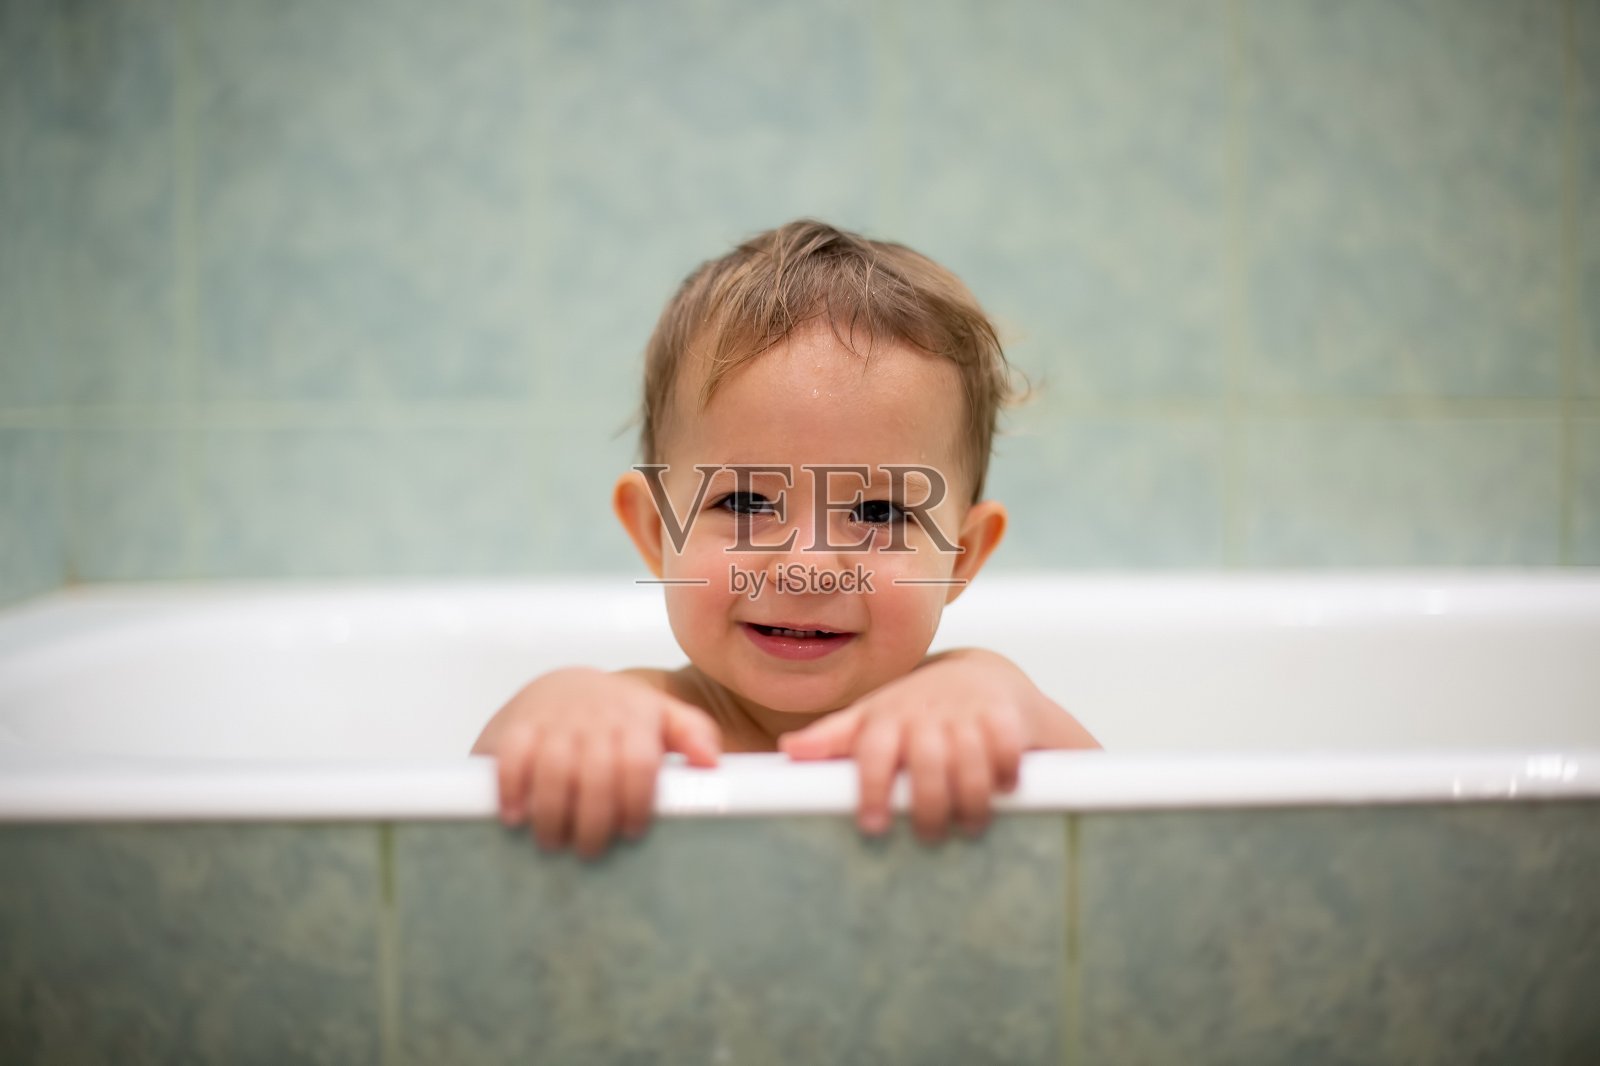 一个可爱的白人婴儿从浴缸里探出头来，把手放在浴缸边，笑着看着镜头。背景是一个模糊的绿色浴室。特写,软焦点照片摄影图片